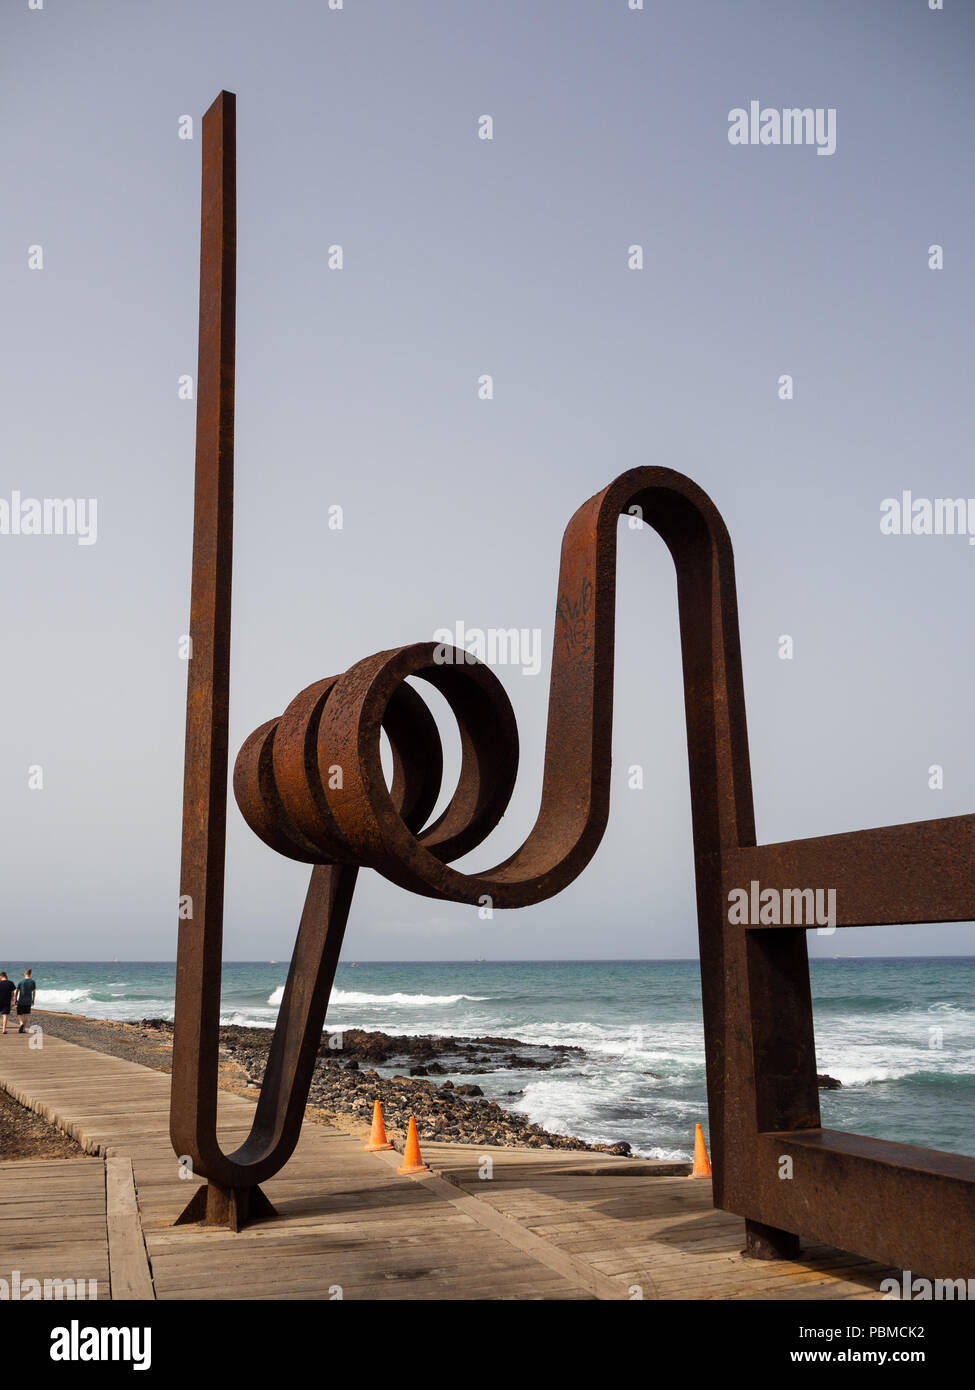 Playa de Las Americas, Tenerife, Spagna - 11 Luglio 2018: Persone in appoggio o passando per il modernista scultura di ferro, di oggetti artistici in metallo per artista J.L. Salvad Foto Stock